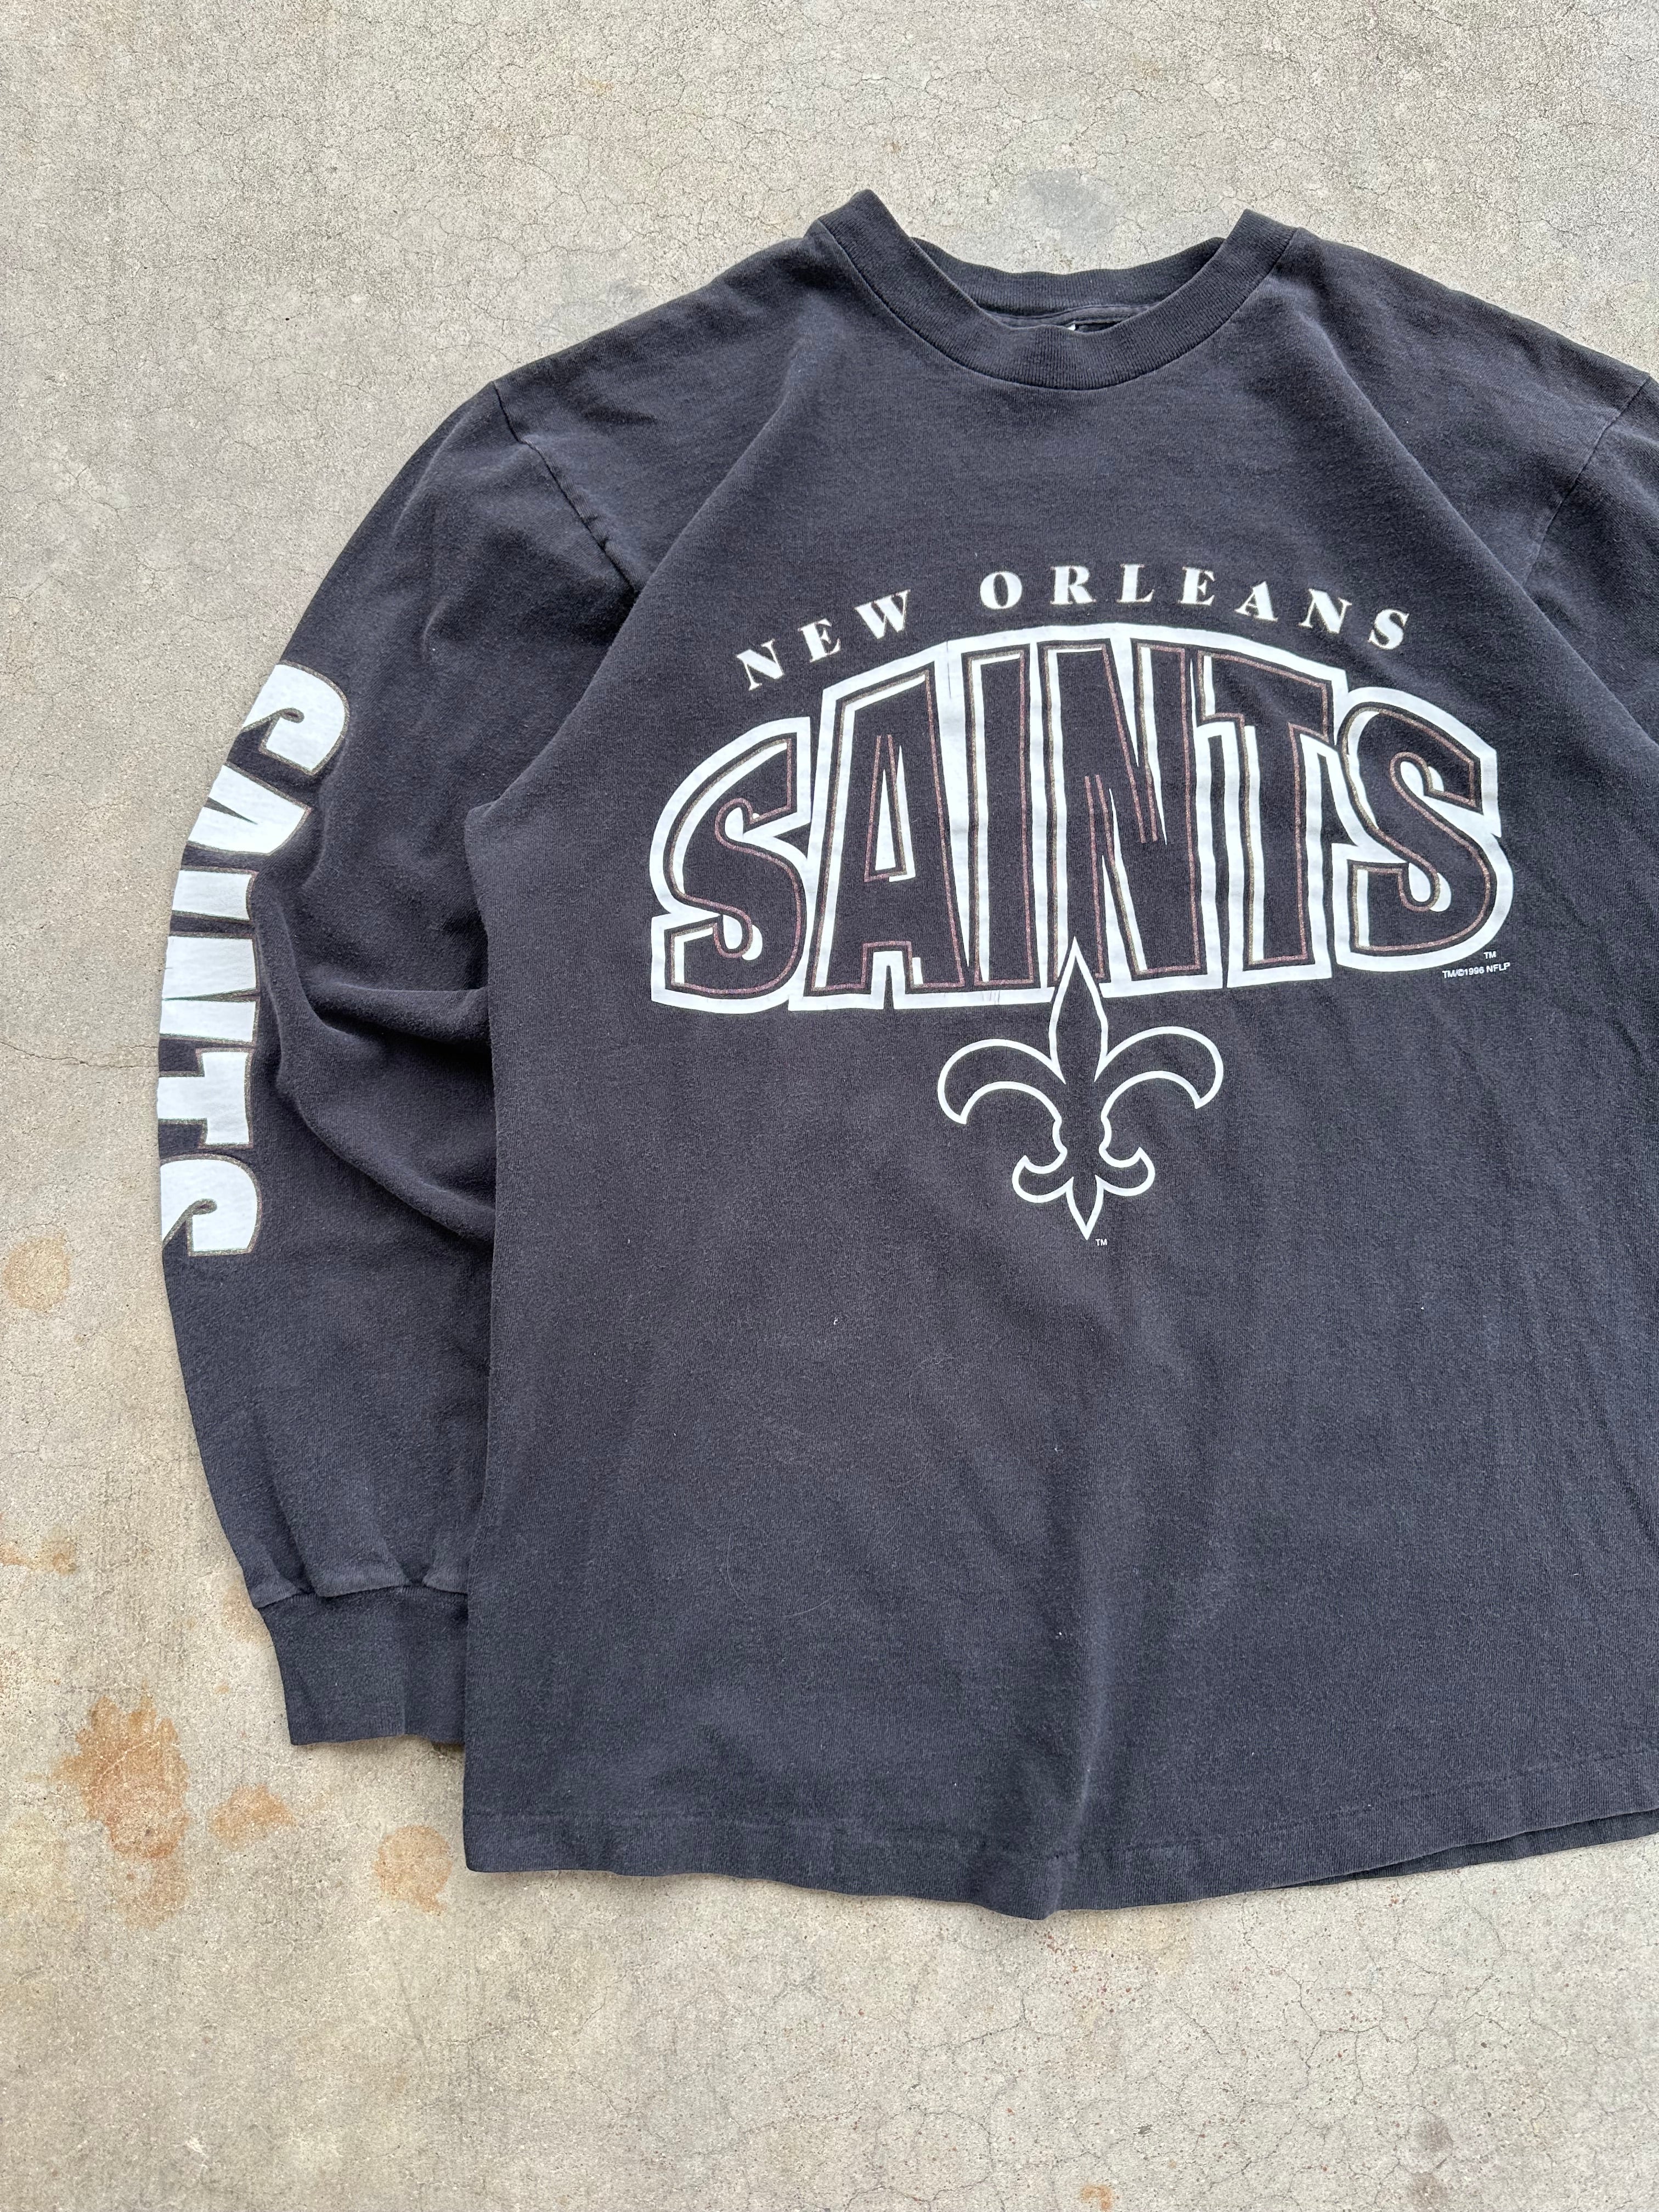 1996 New Orleans Saints Longsleeve T-Shirt (M/L)